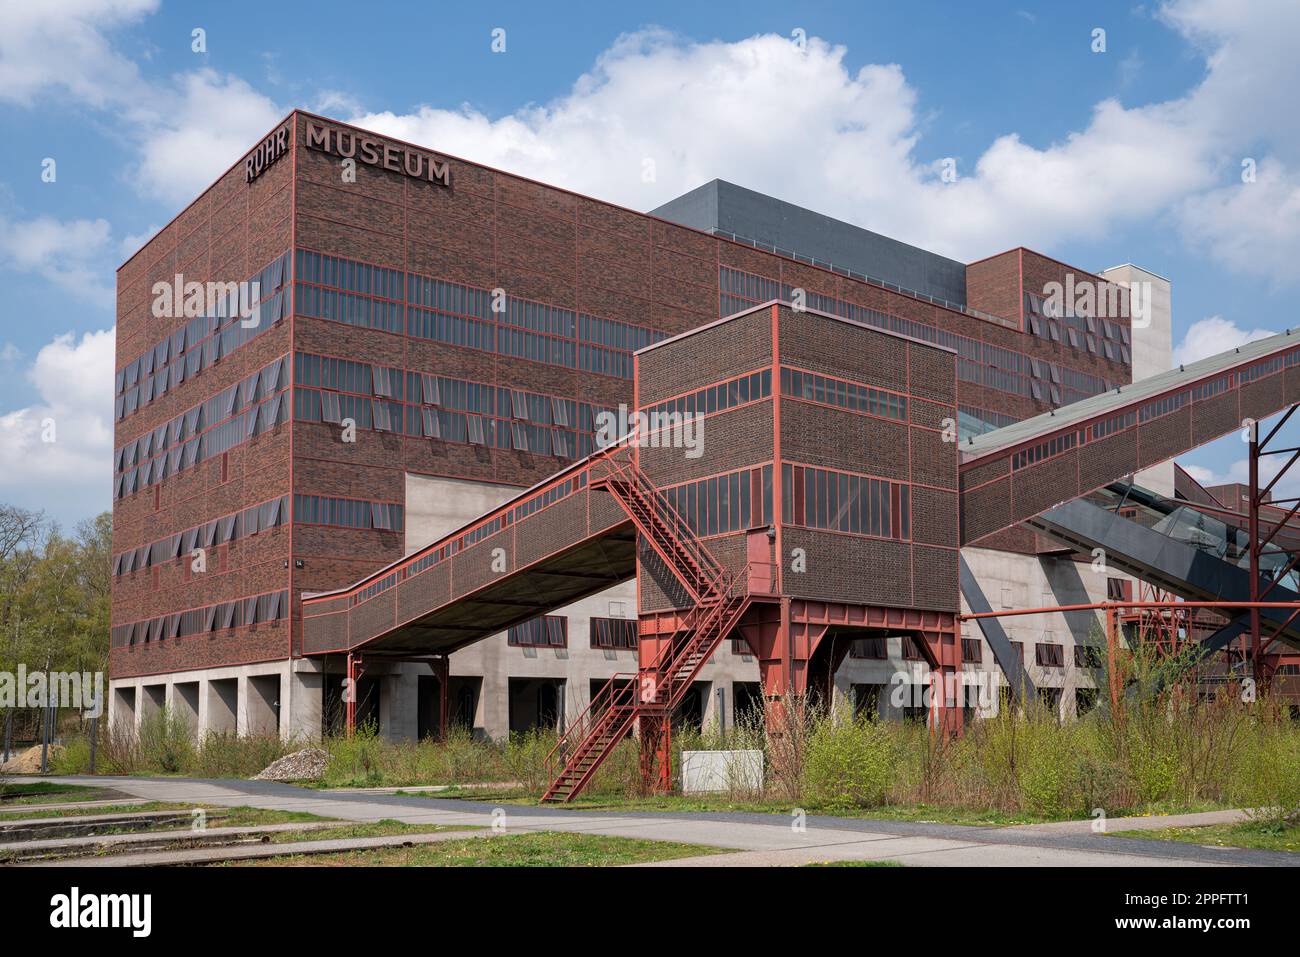 Ruhr Museum, Zeche Zollverein, Essen, Germany Stock Photo